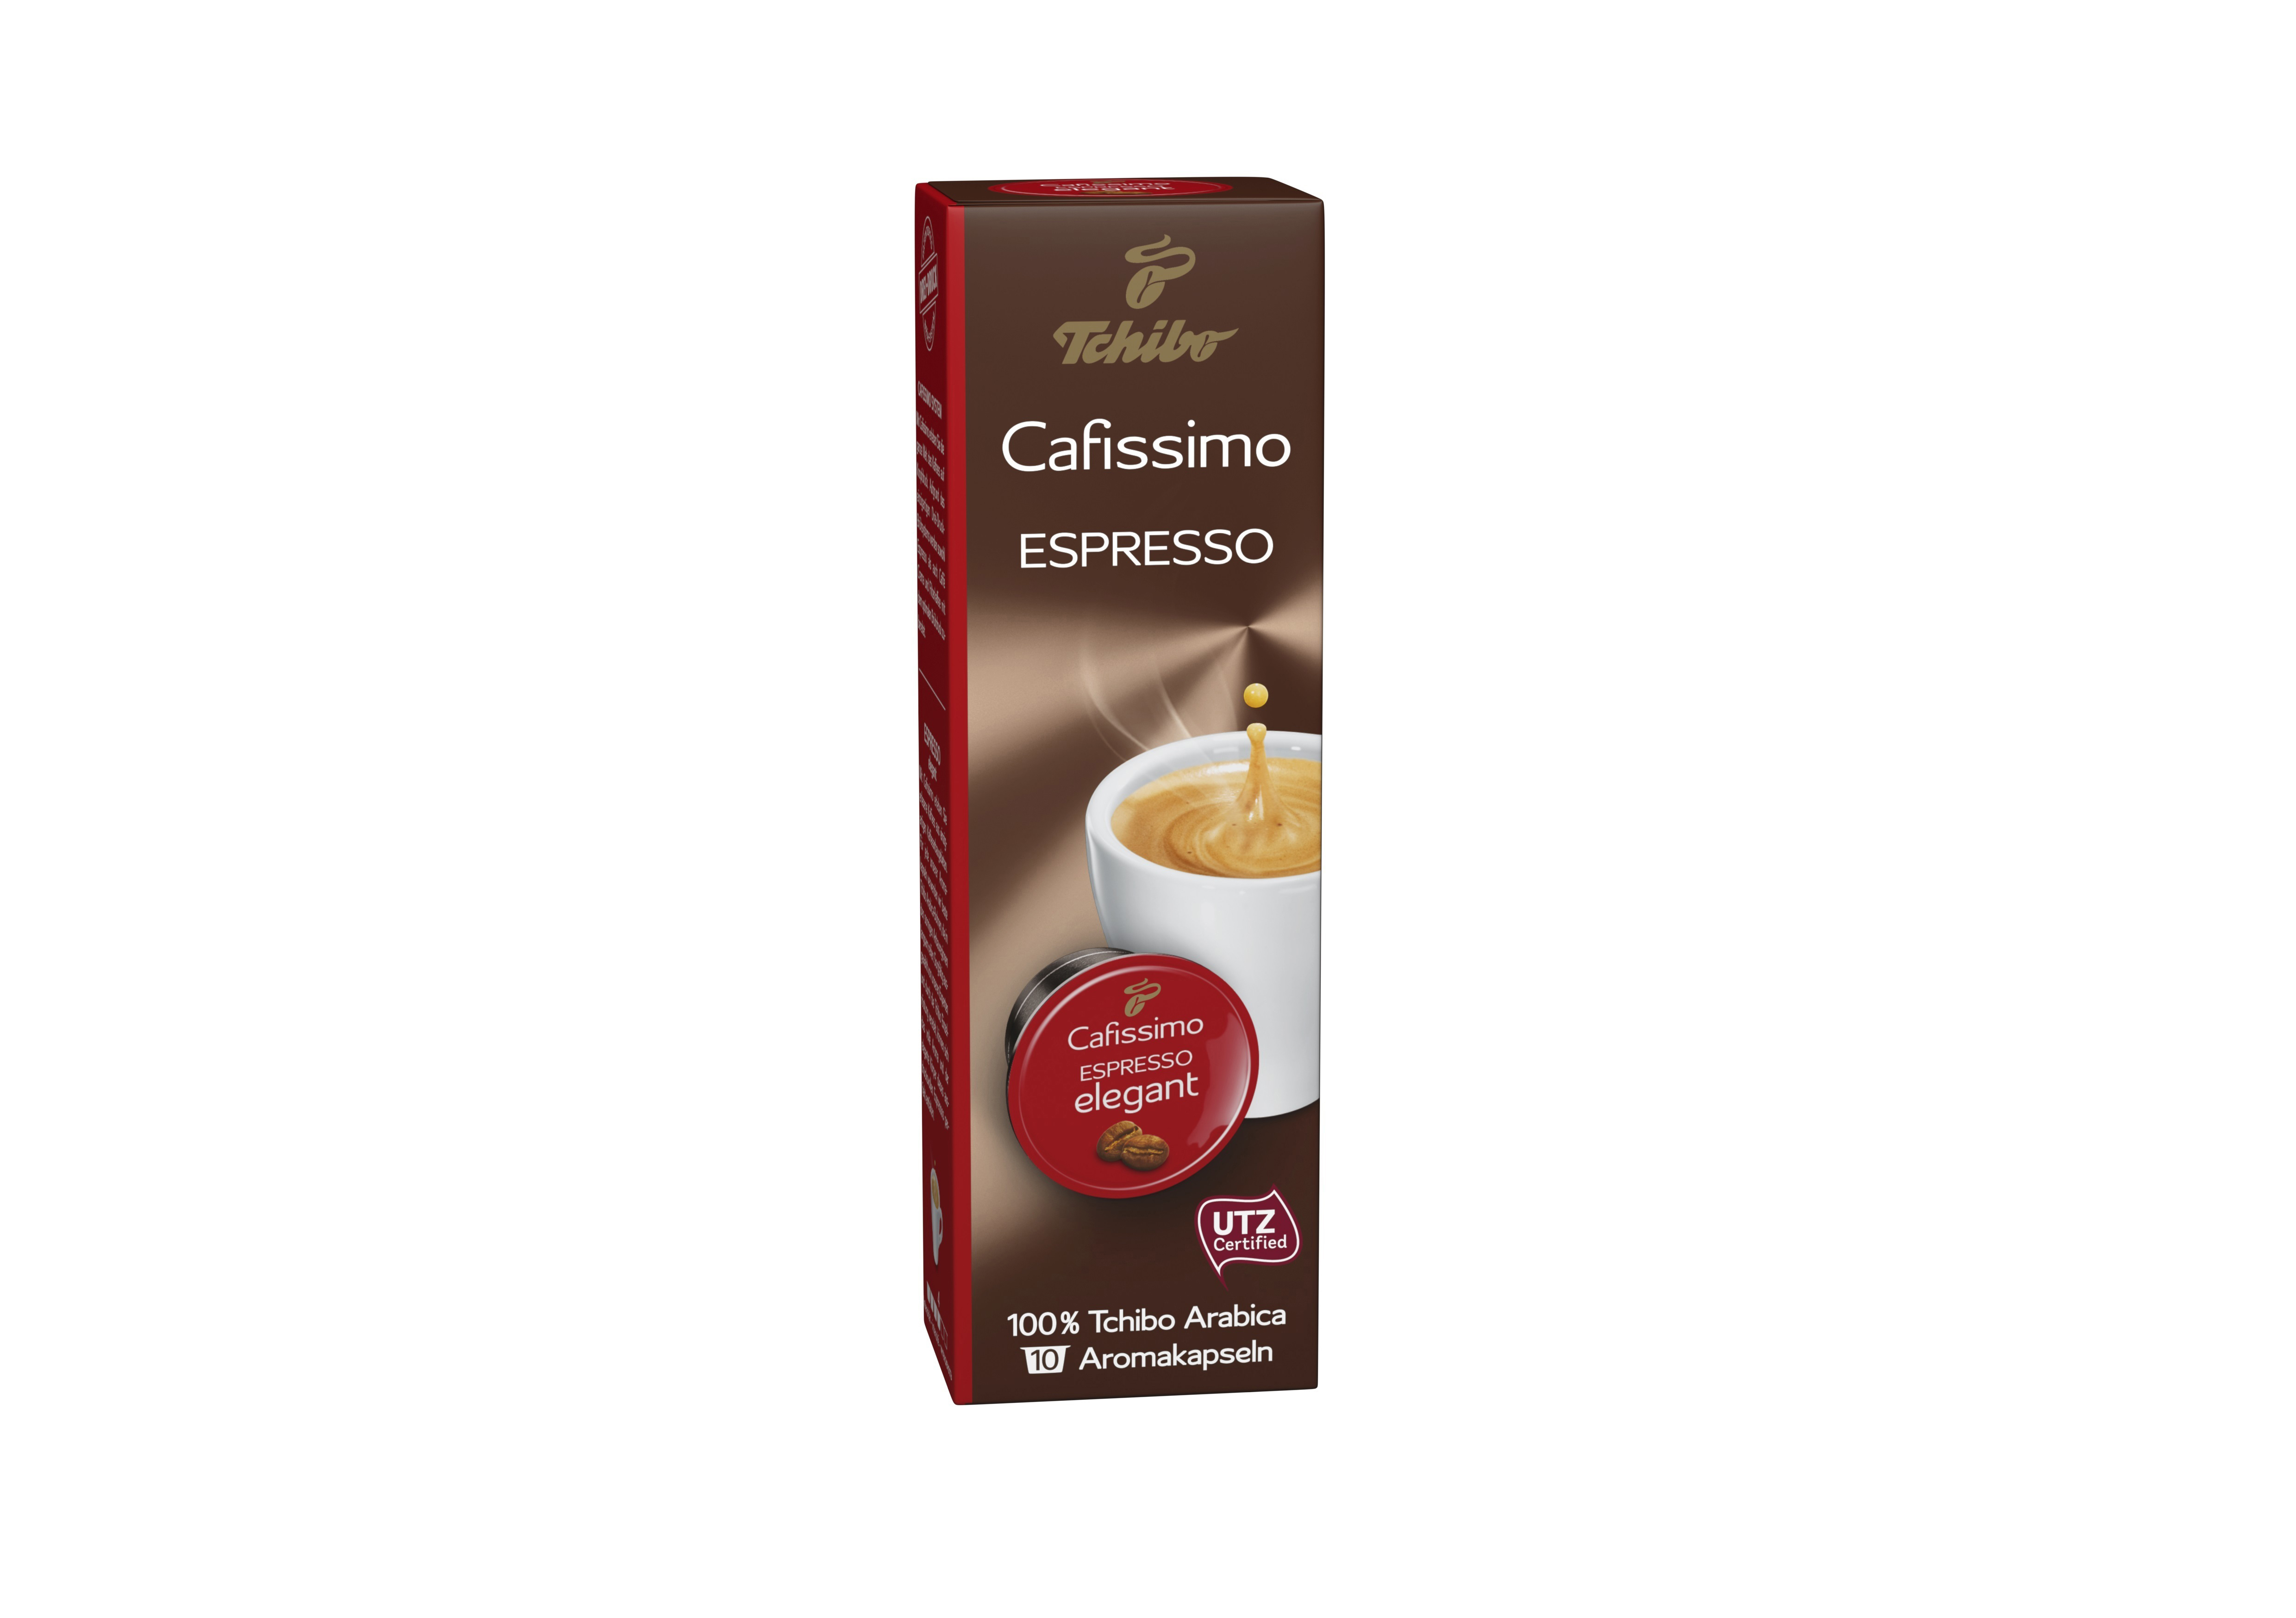 Espresso elegant Kaffeekapseln TCHIBO (Tchibo Cafissimo)